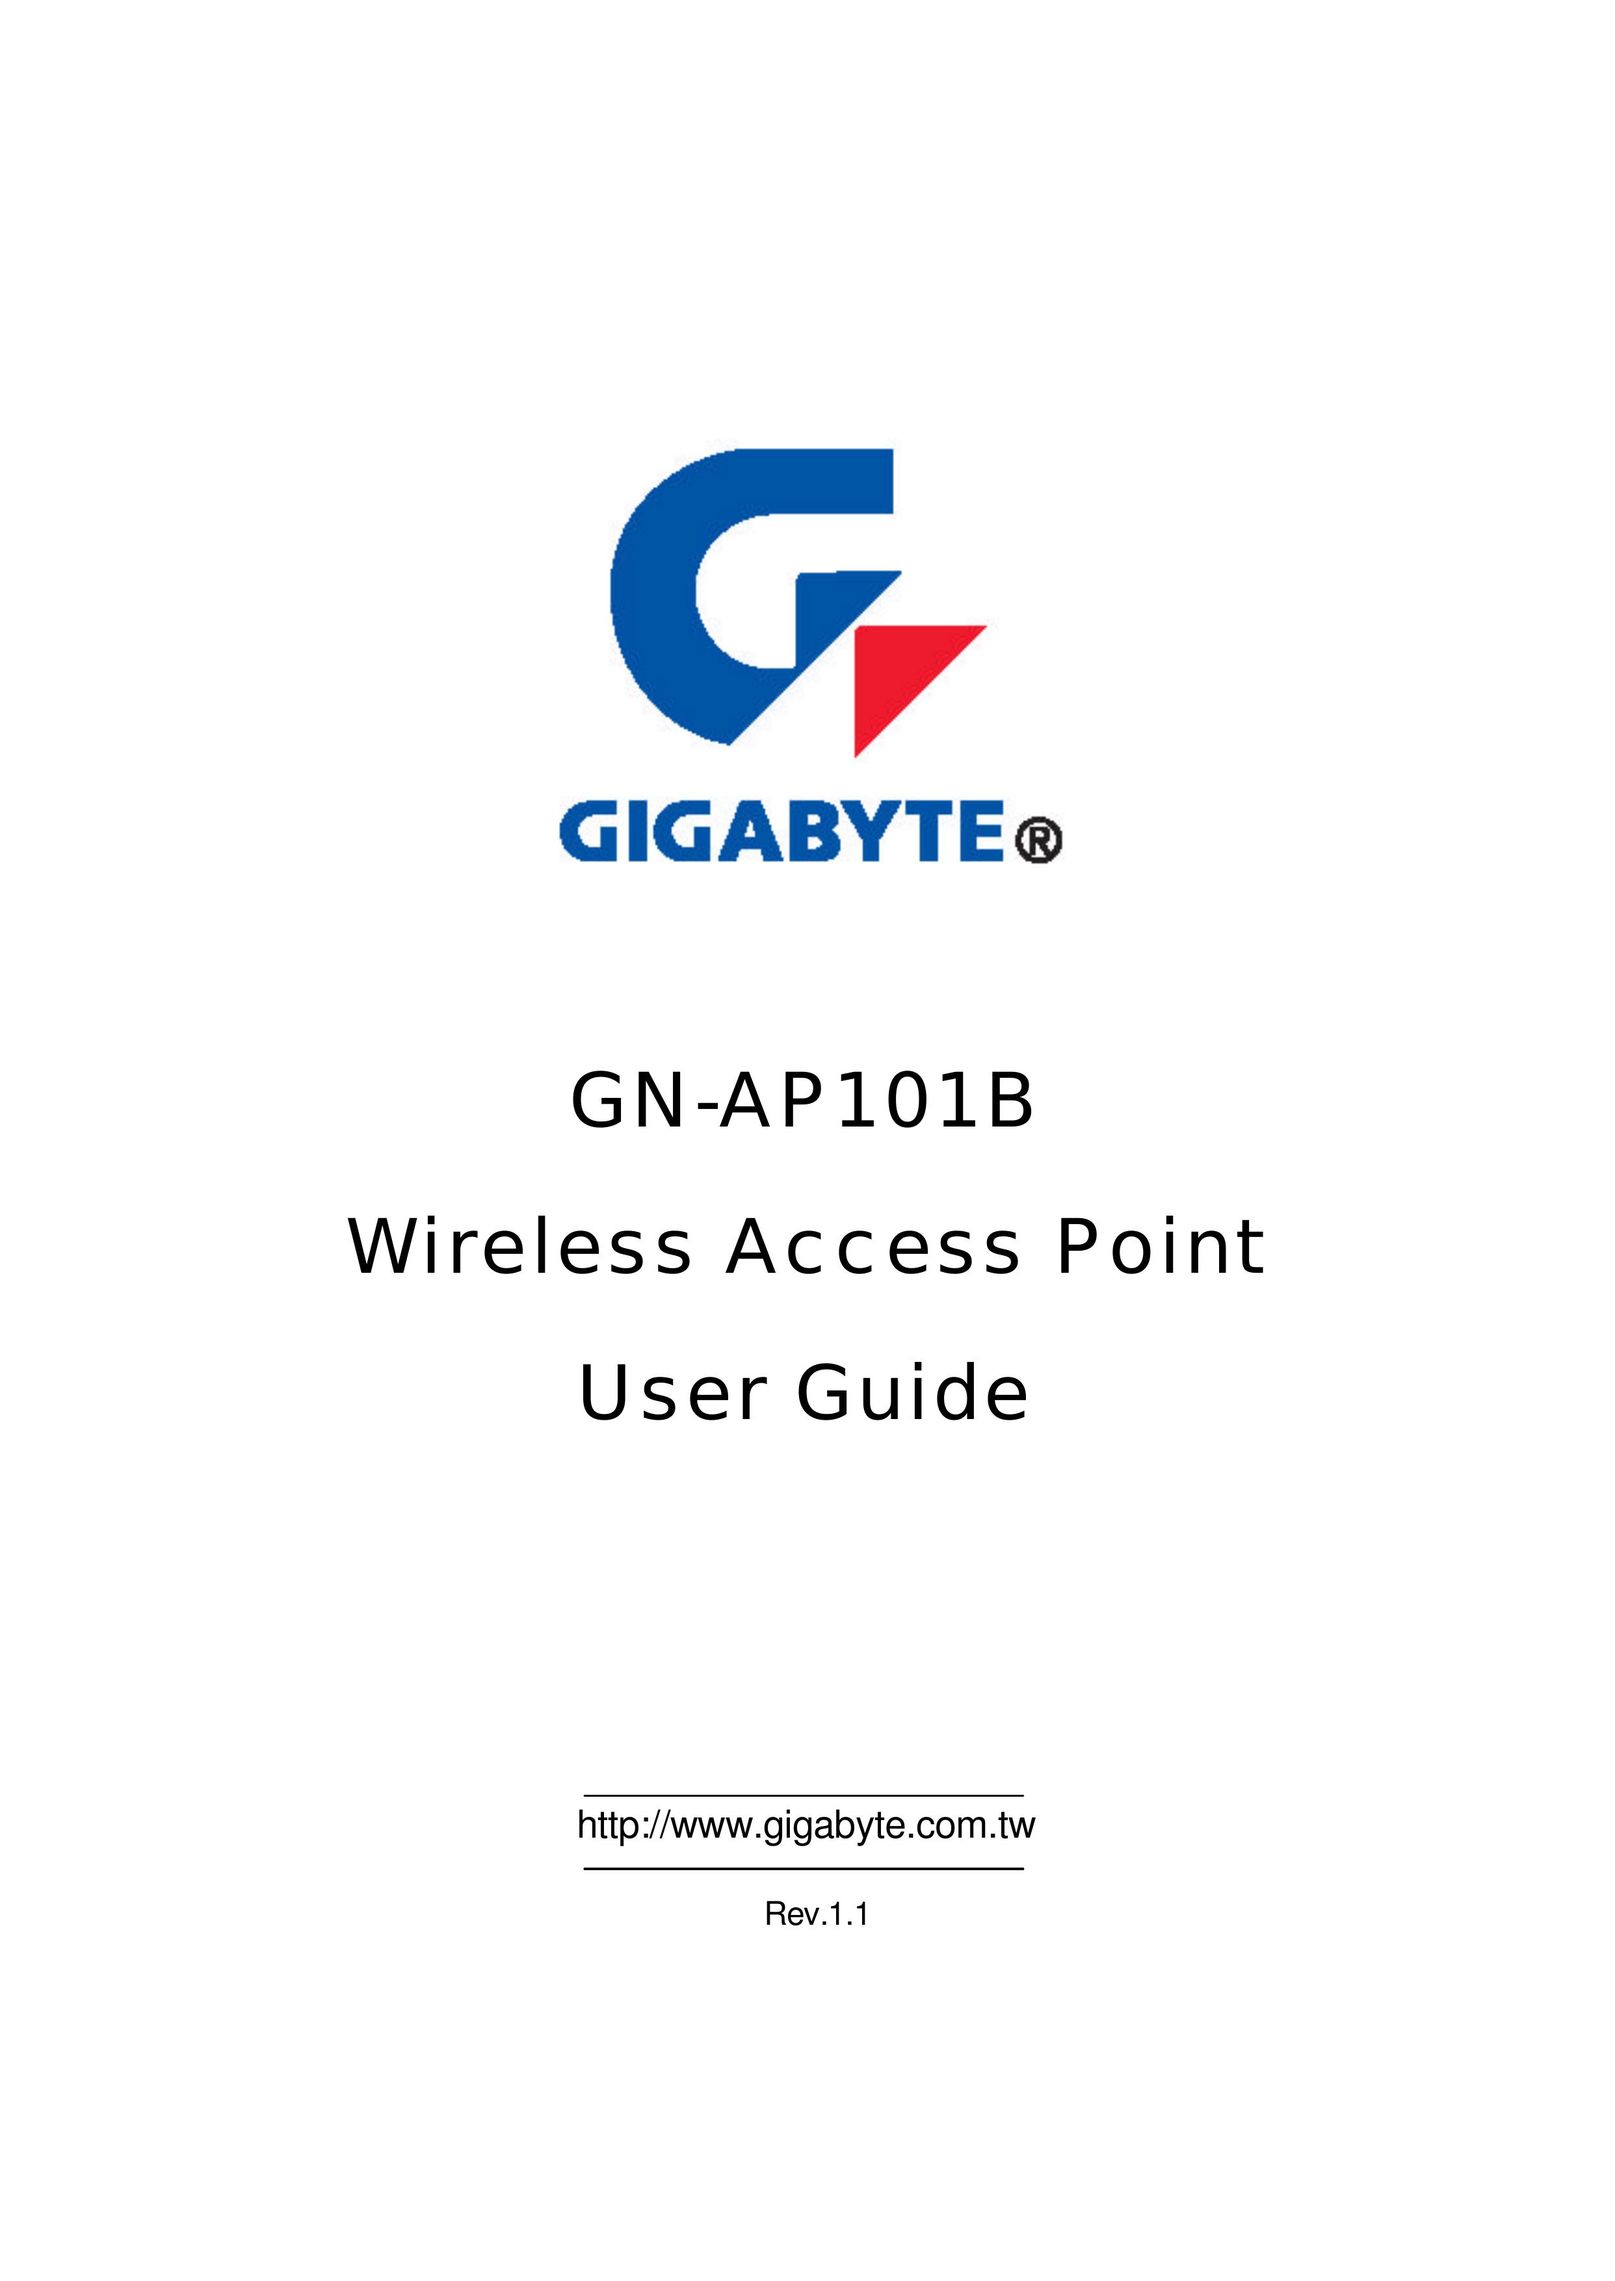 Gigabyte GN-AP101B Network Router User Manual